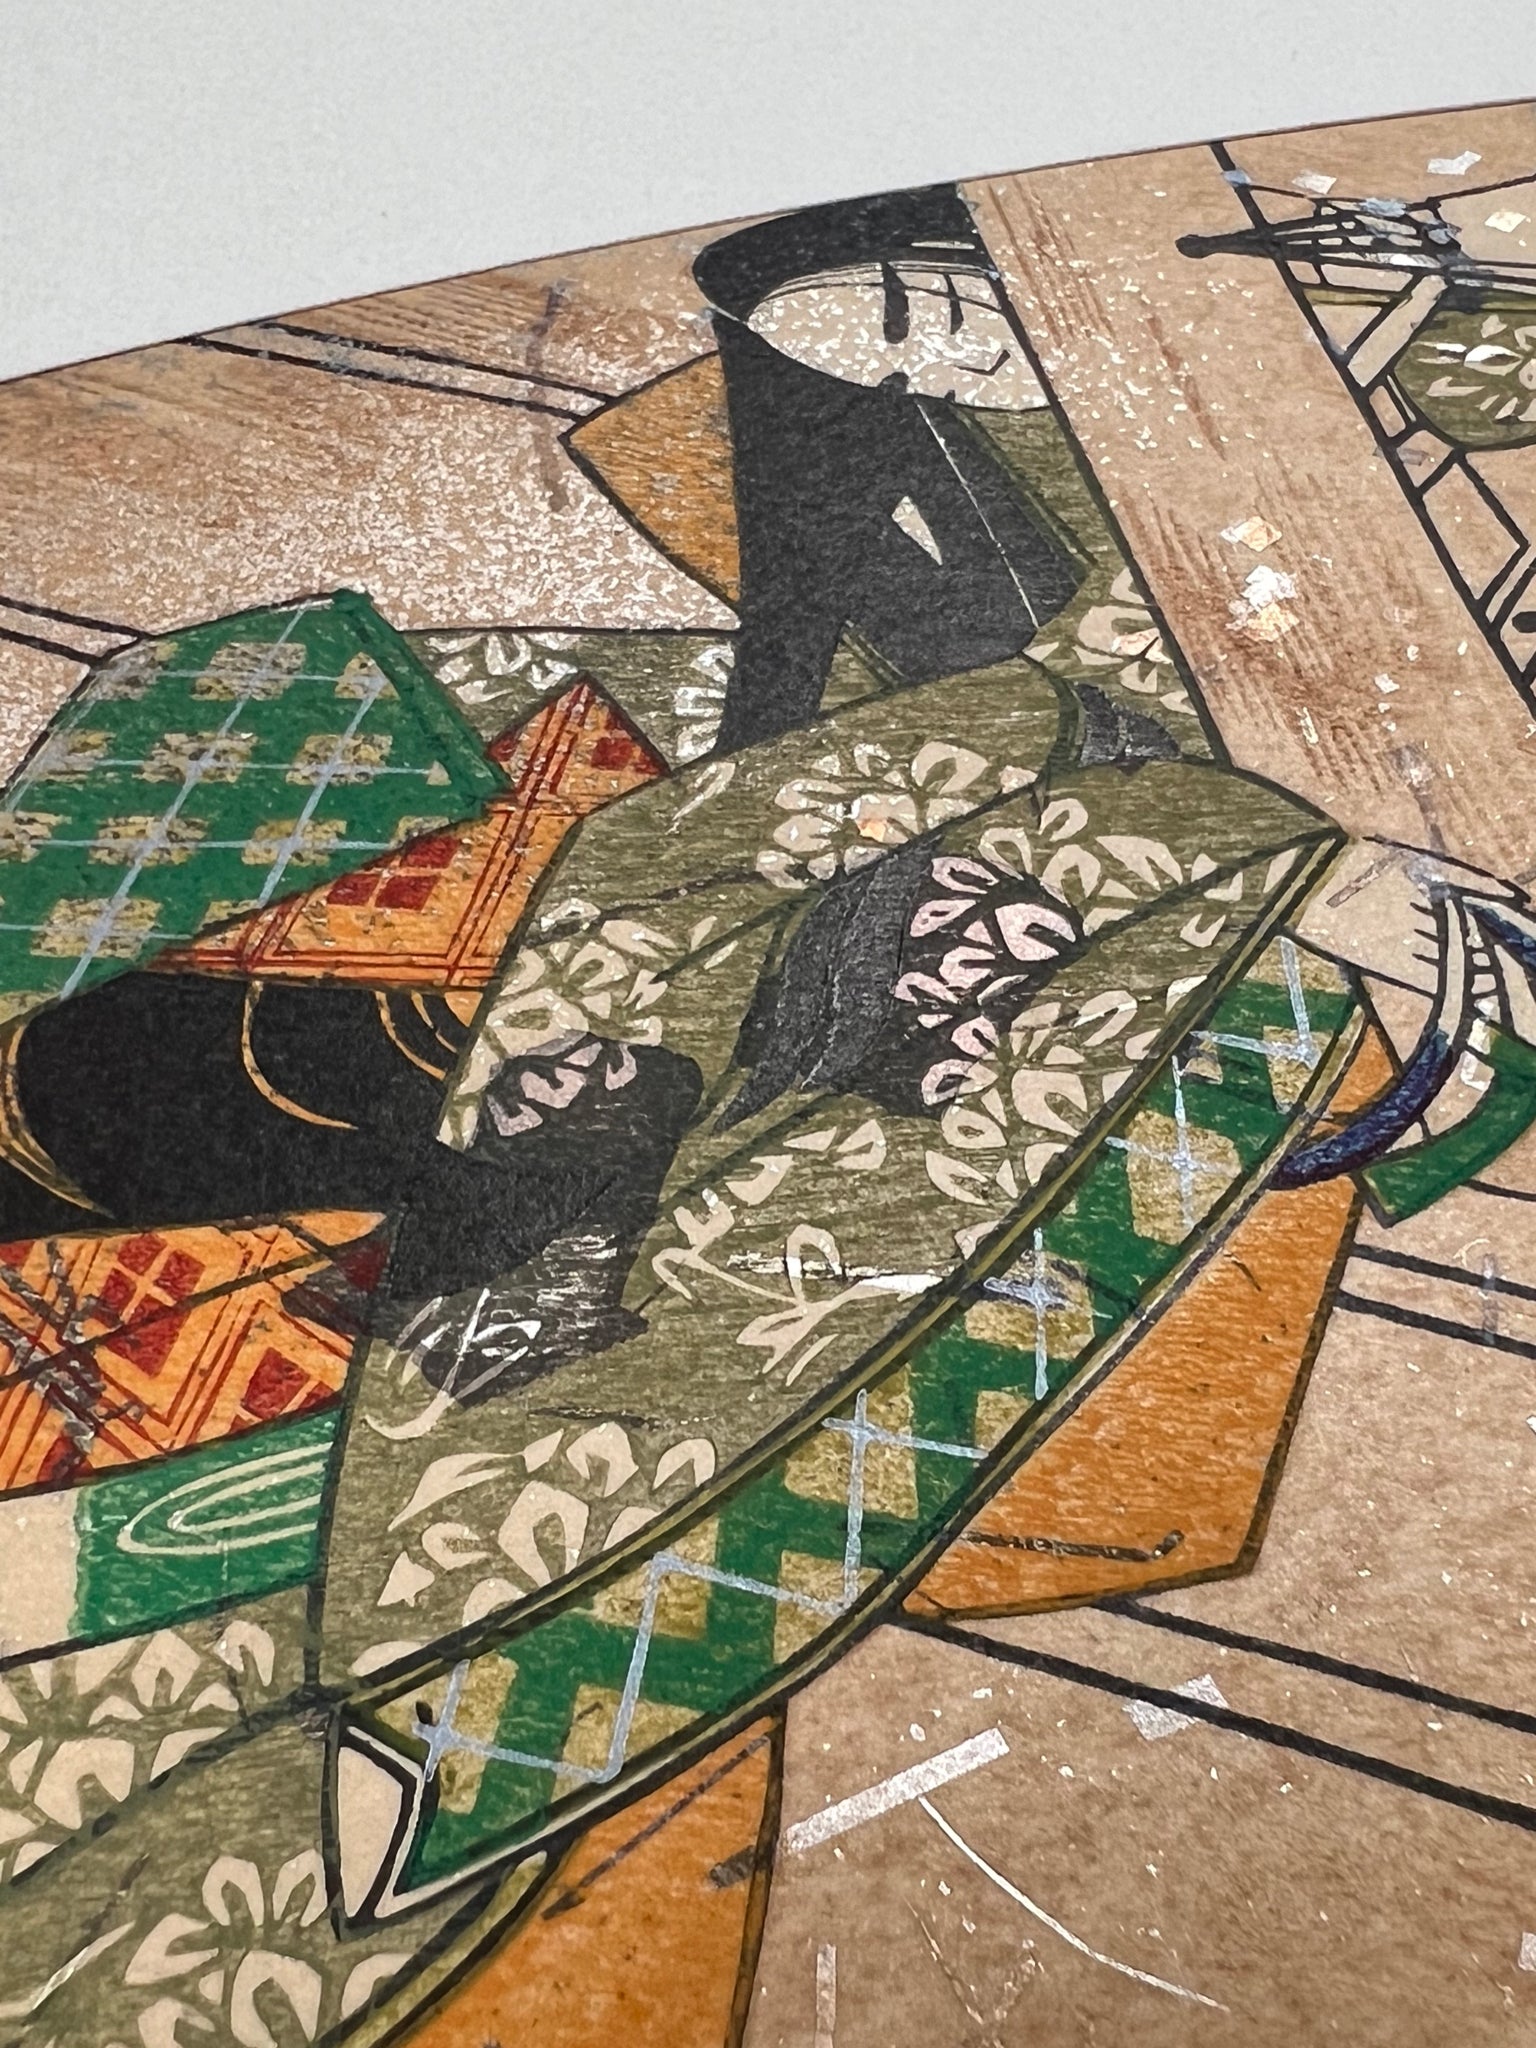 Estampe japonaise en forme d'éventail parsemée de fragments d'or et d'argent, gros plan sur la manche droite du kimono de la femme assoupie sur la terrasse.